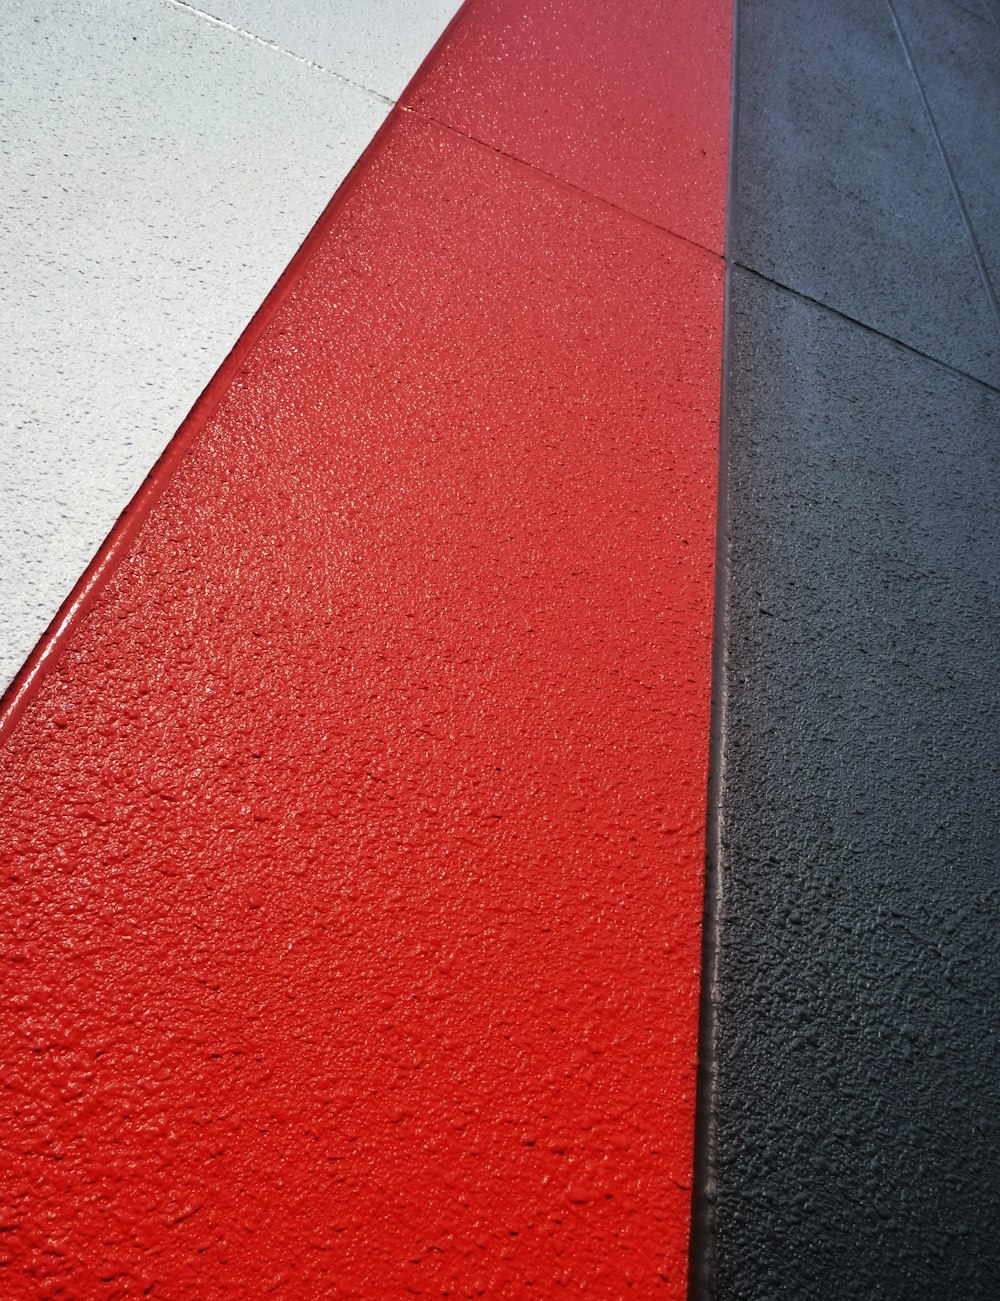 Foto Um close up de uma calçada vermelha e uma preta – Imagem de Vermelho  grátis no Unsplash